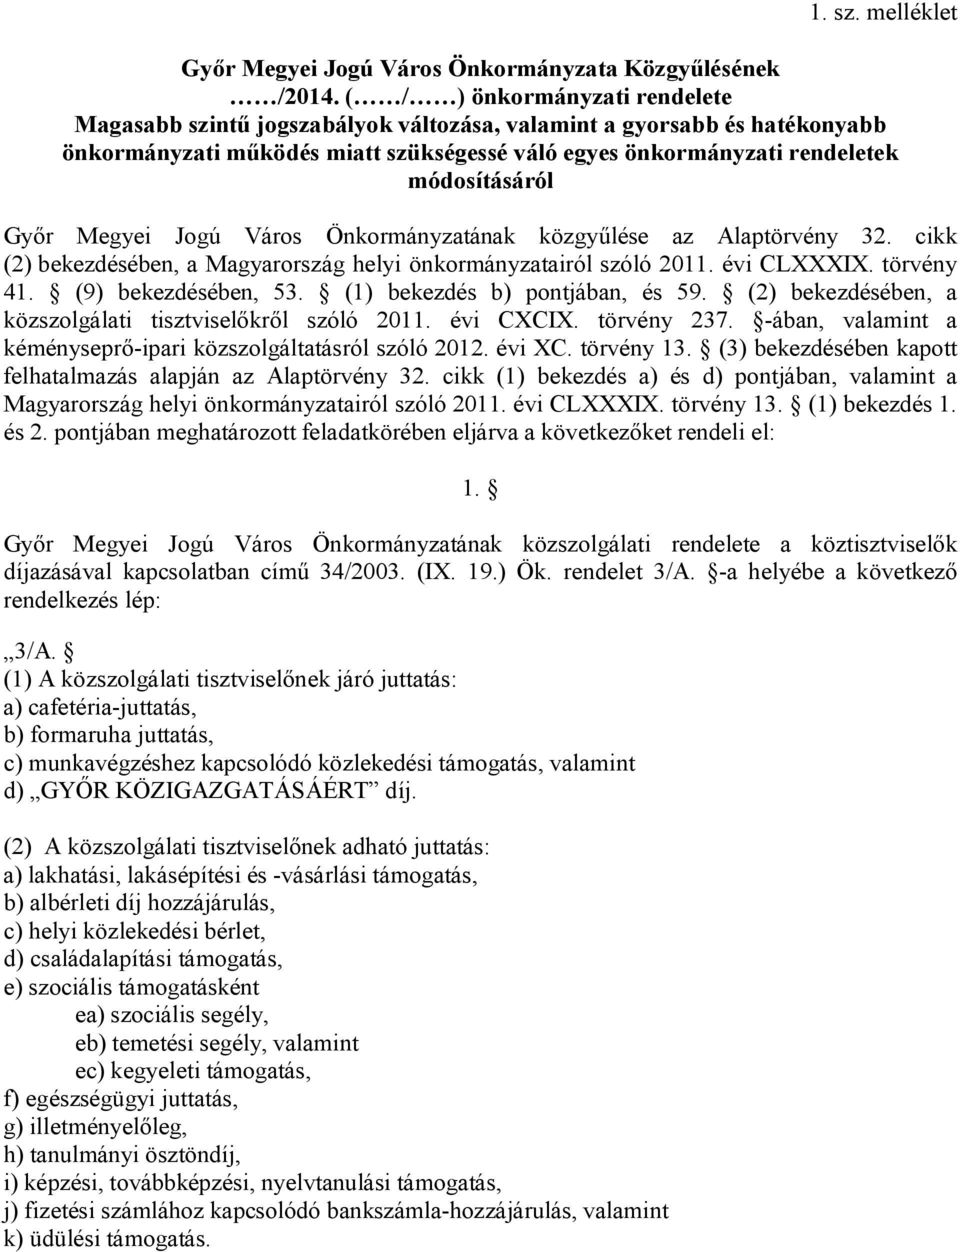 Megyei Jogú Város Önkormányzatának közgyűlése az Alaptörvény 32. cikk (2) bekezdésében, a Magyarország helyi önkormányzatairól szóló 2011. évi CLXXXIX. törvény 41. (9) bekezdésében, 53.